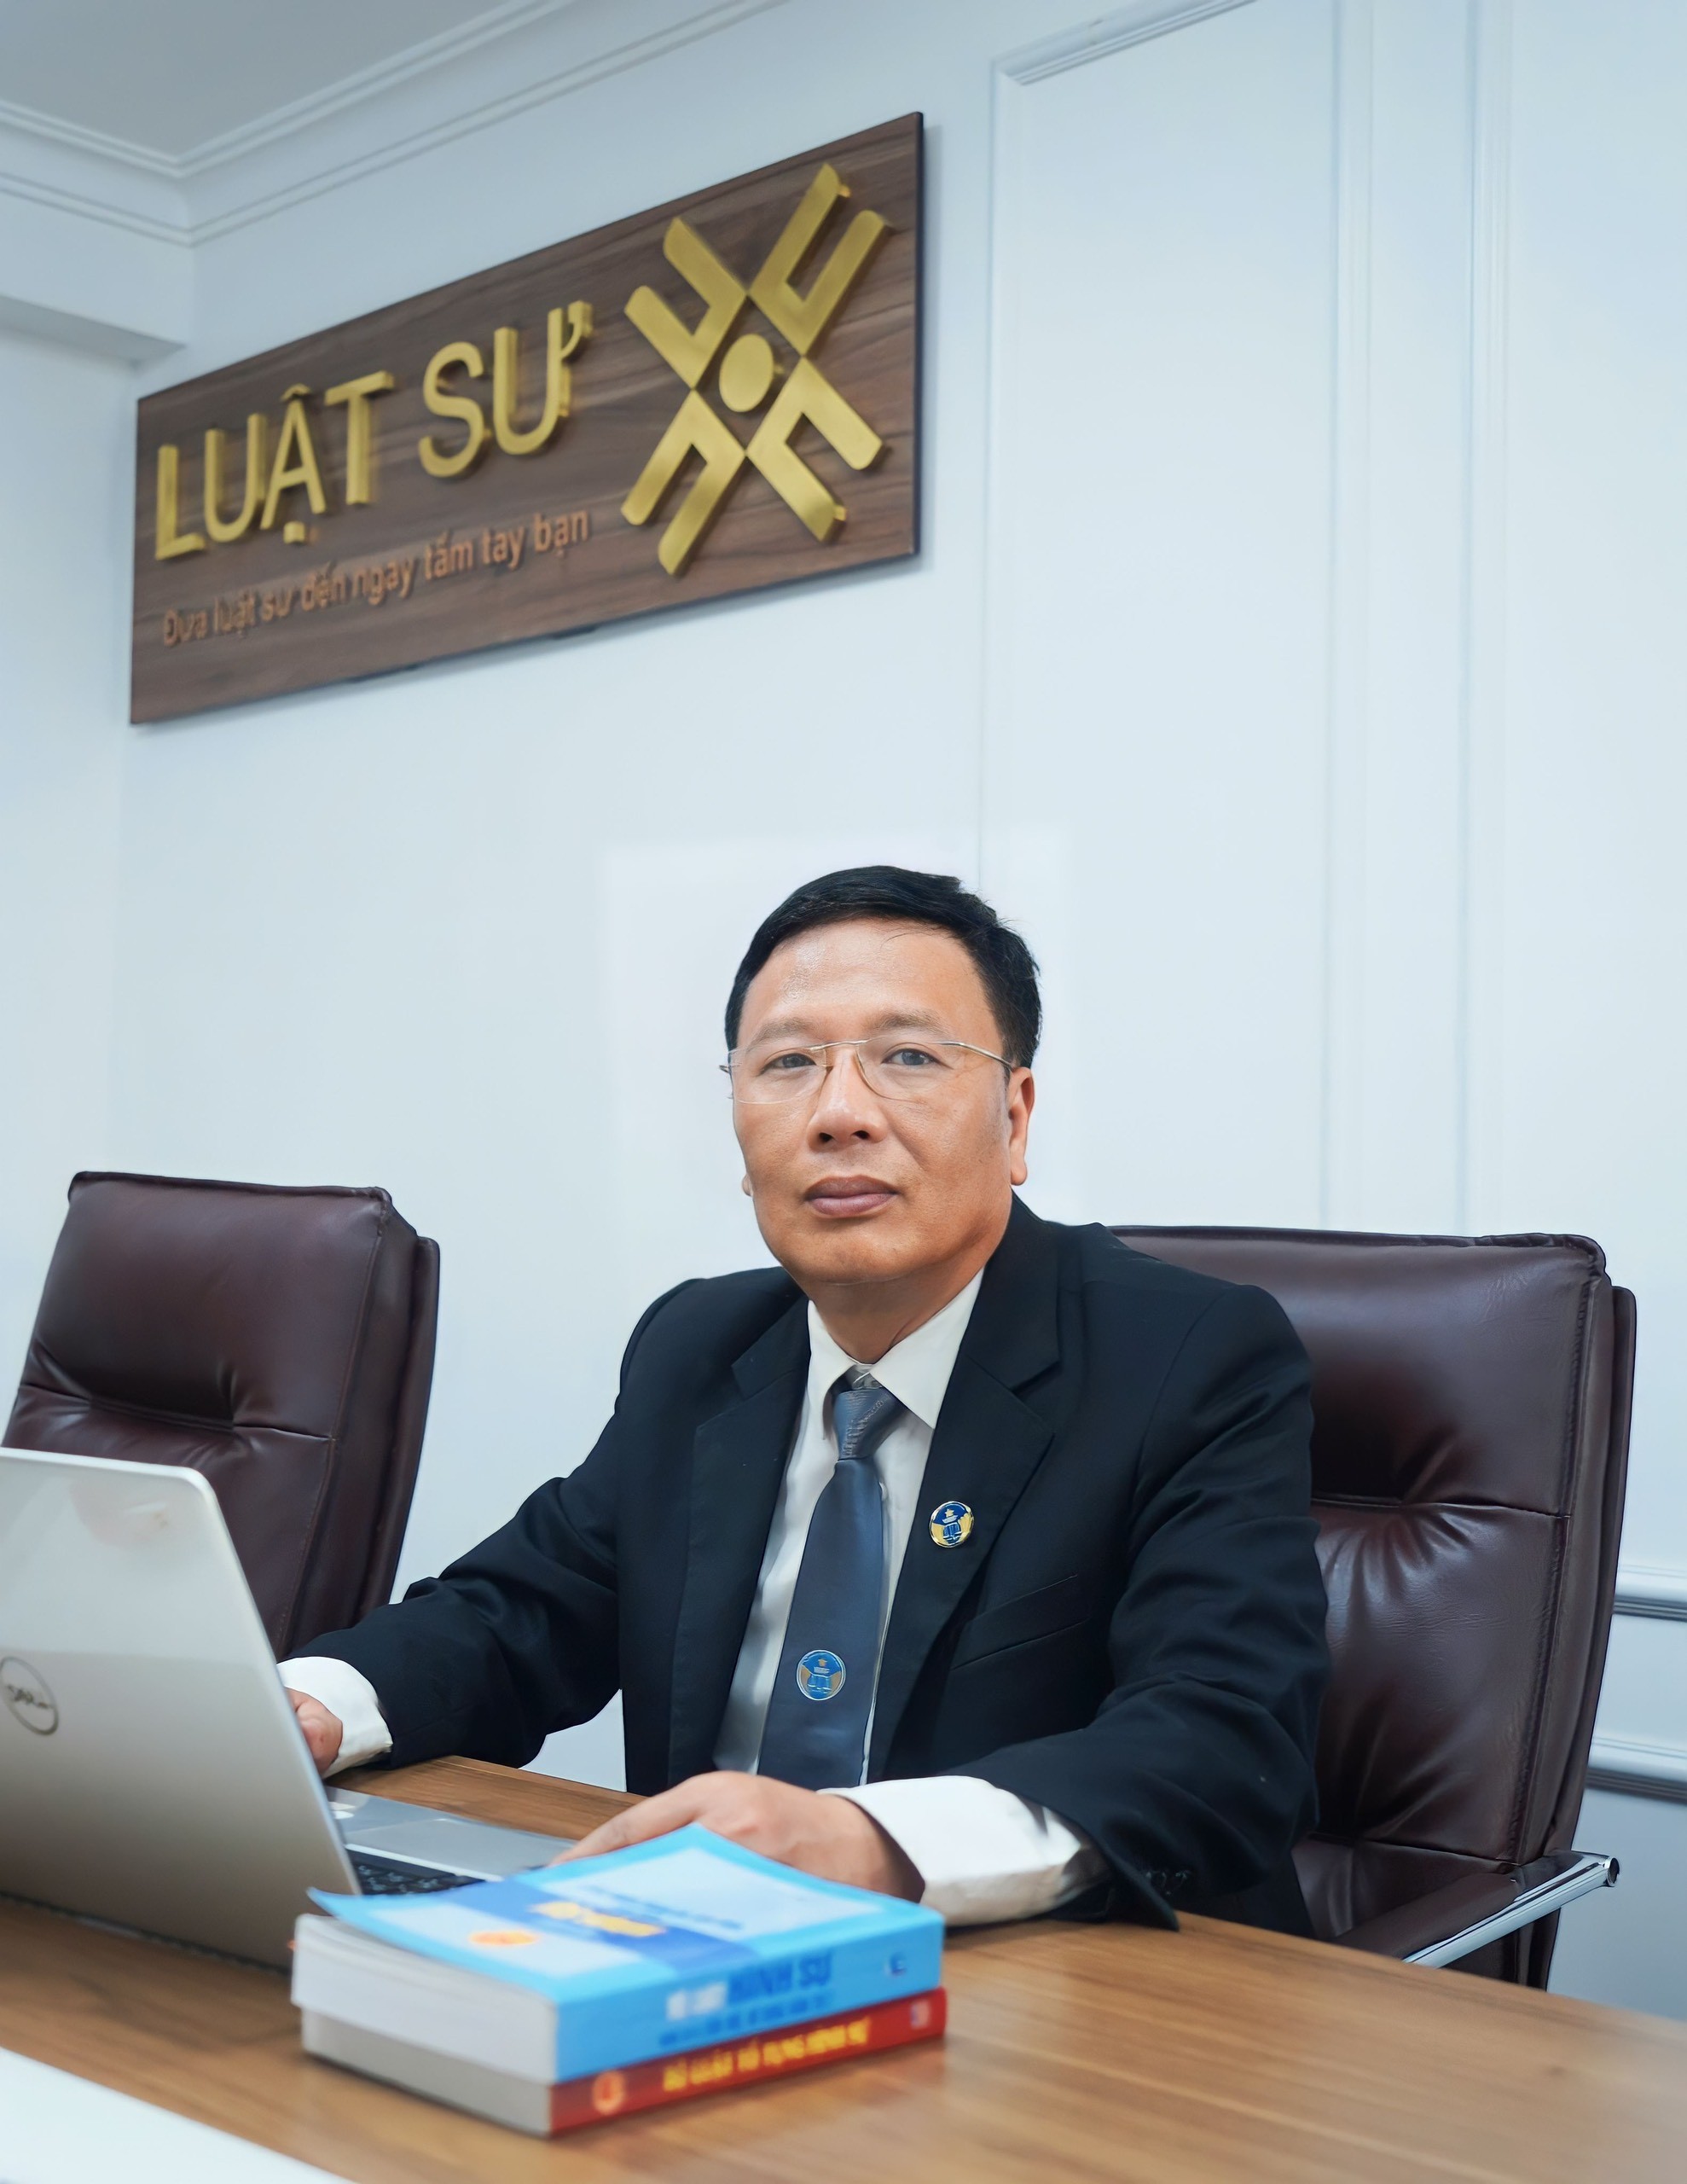 
Luật sư Bùi Xuân Lai (Hệ thống dịch vụ pháp lý toàn quốc Luật sư X).
